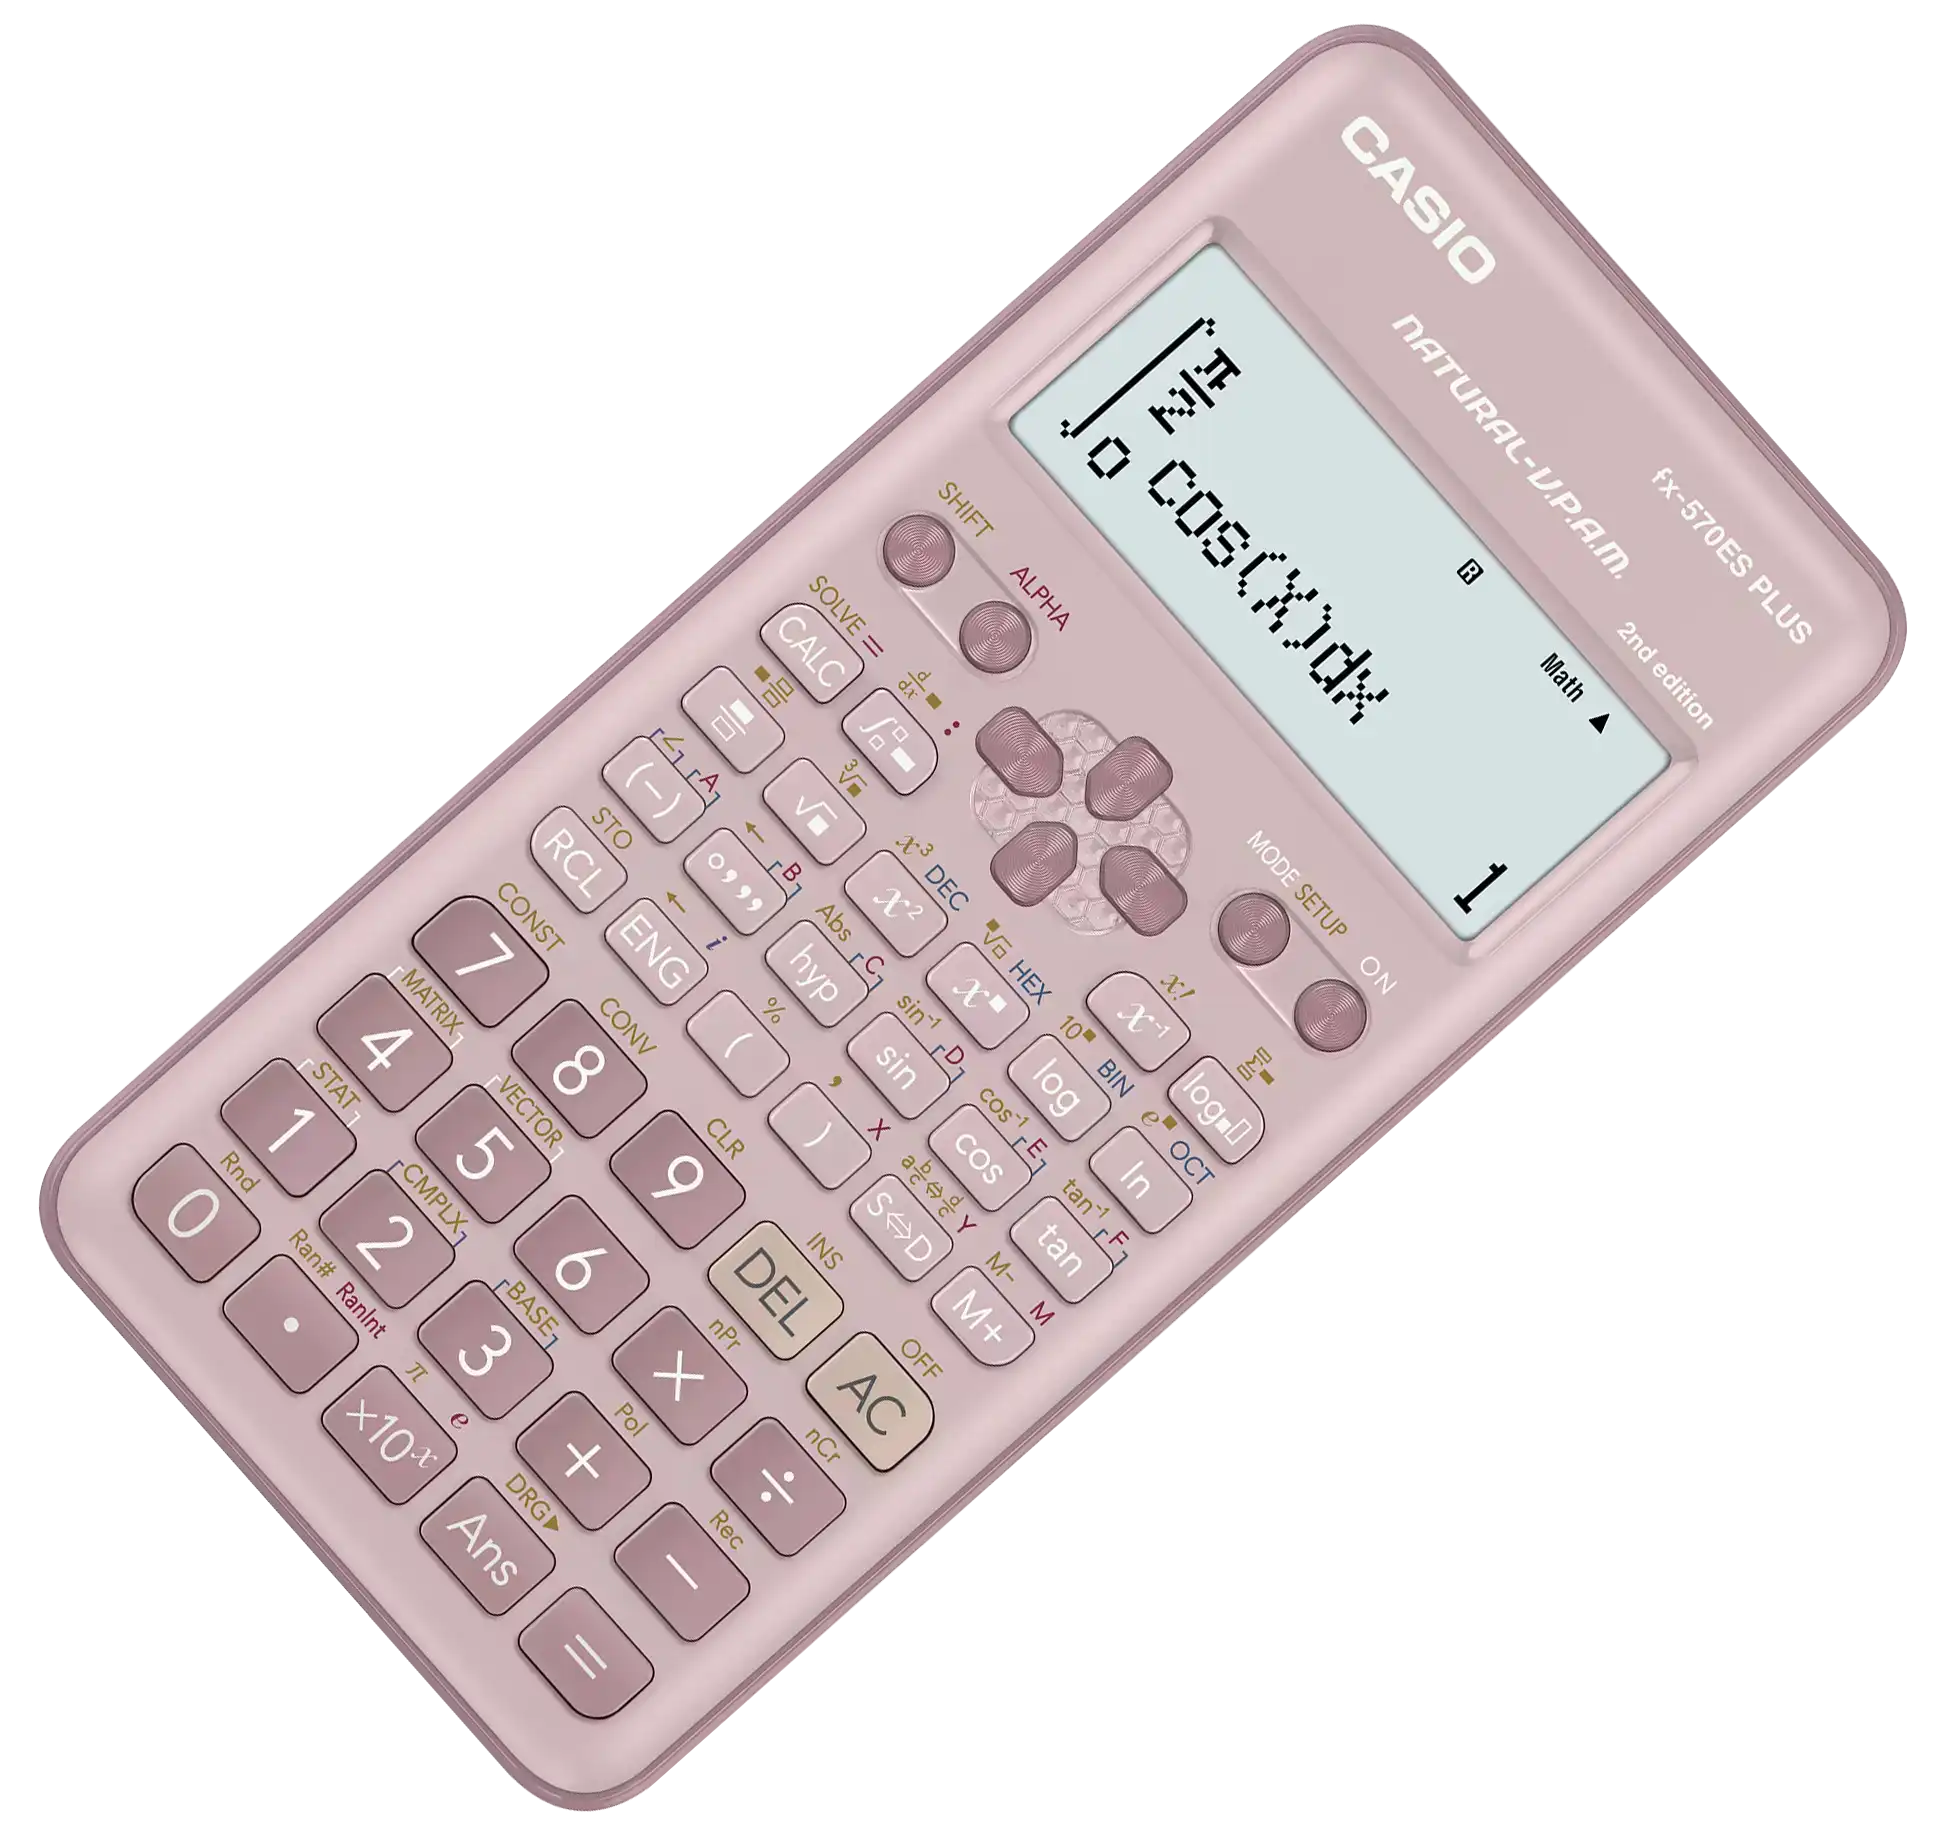 Casio scientific calculator, 417 functions, Pink, fx-570ES PLUS-2PK